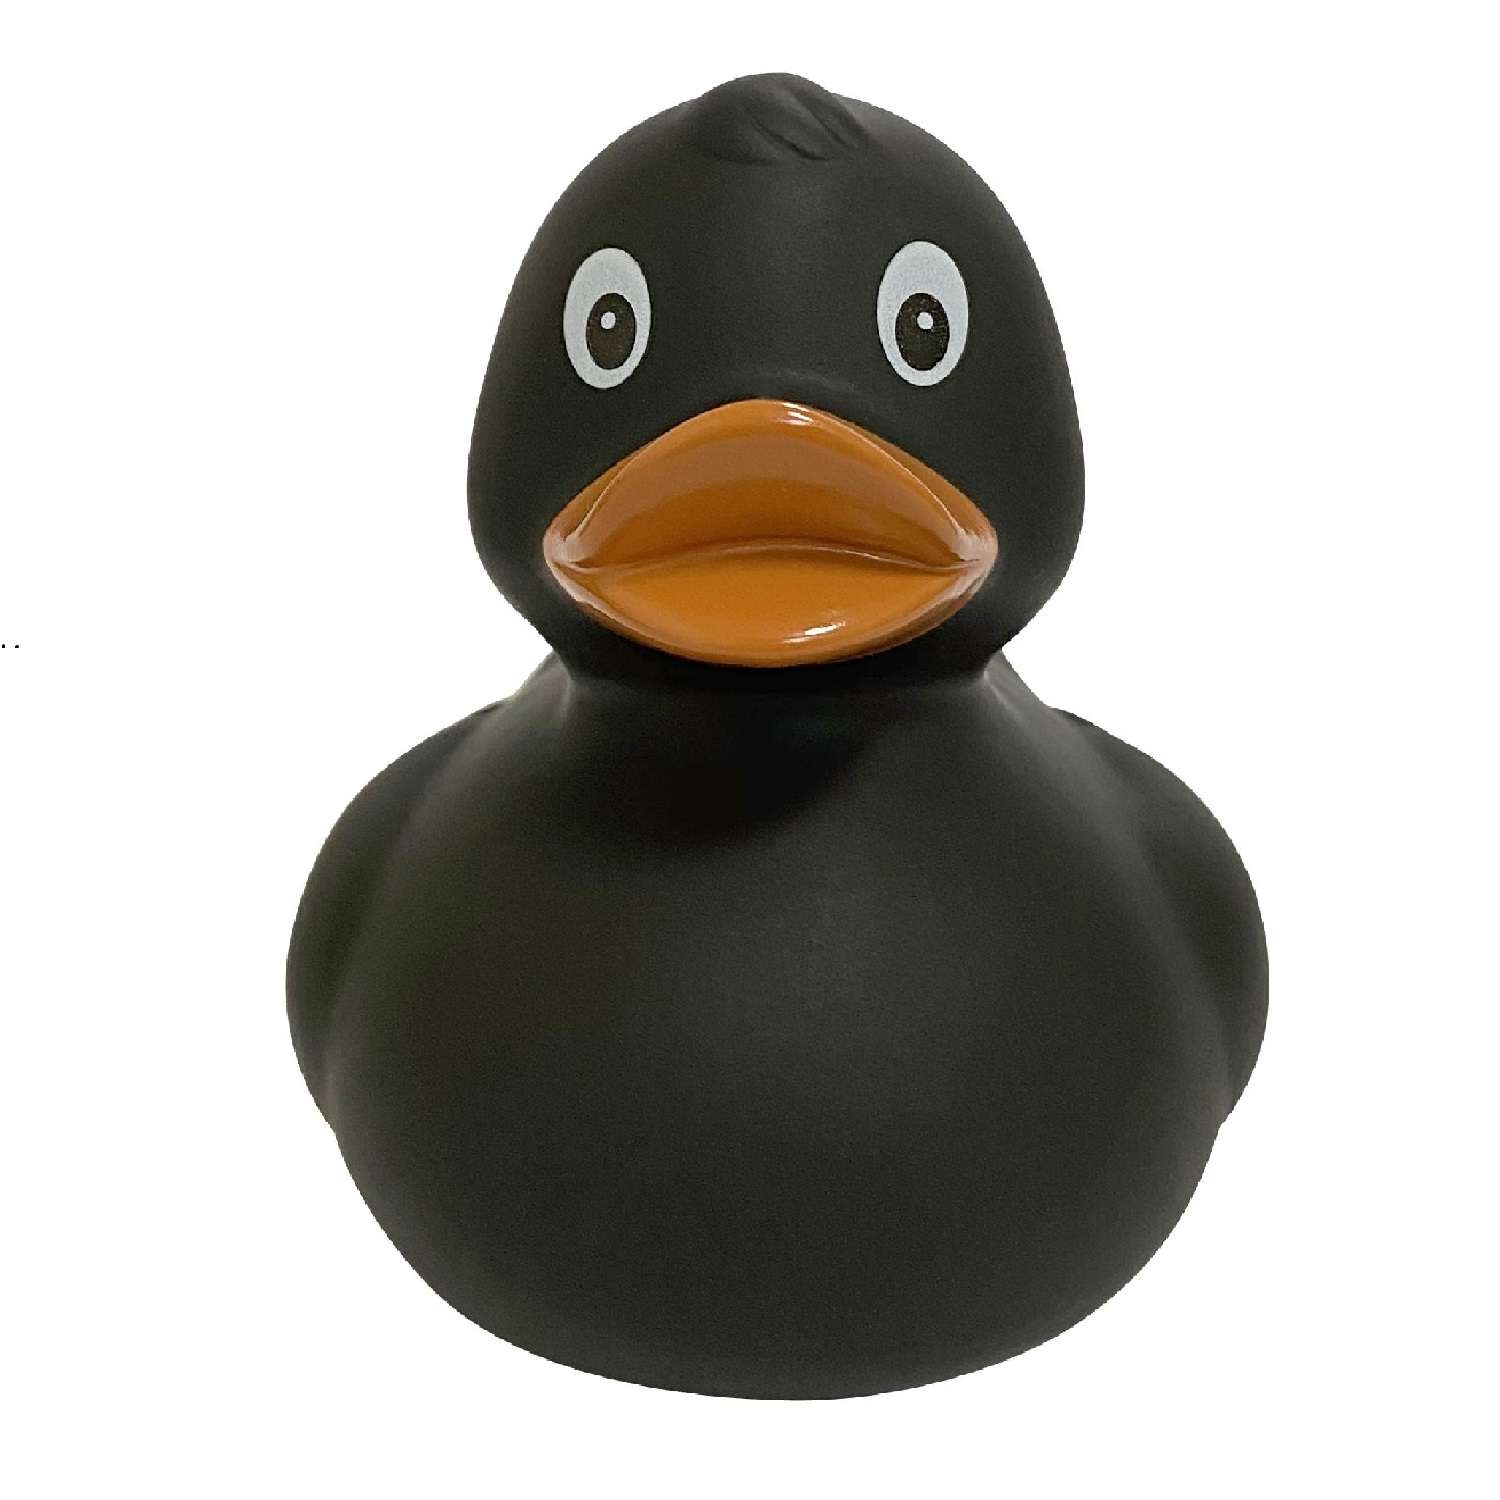 Игрушка Funny ducks для ванной Черная уточка 1304 - фото 1